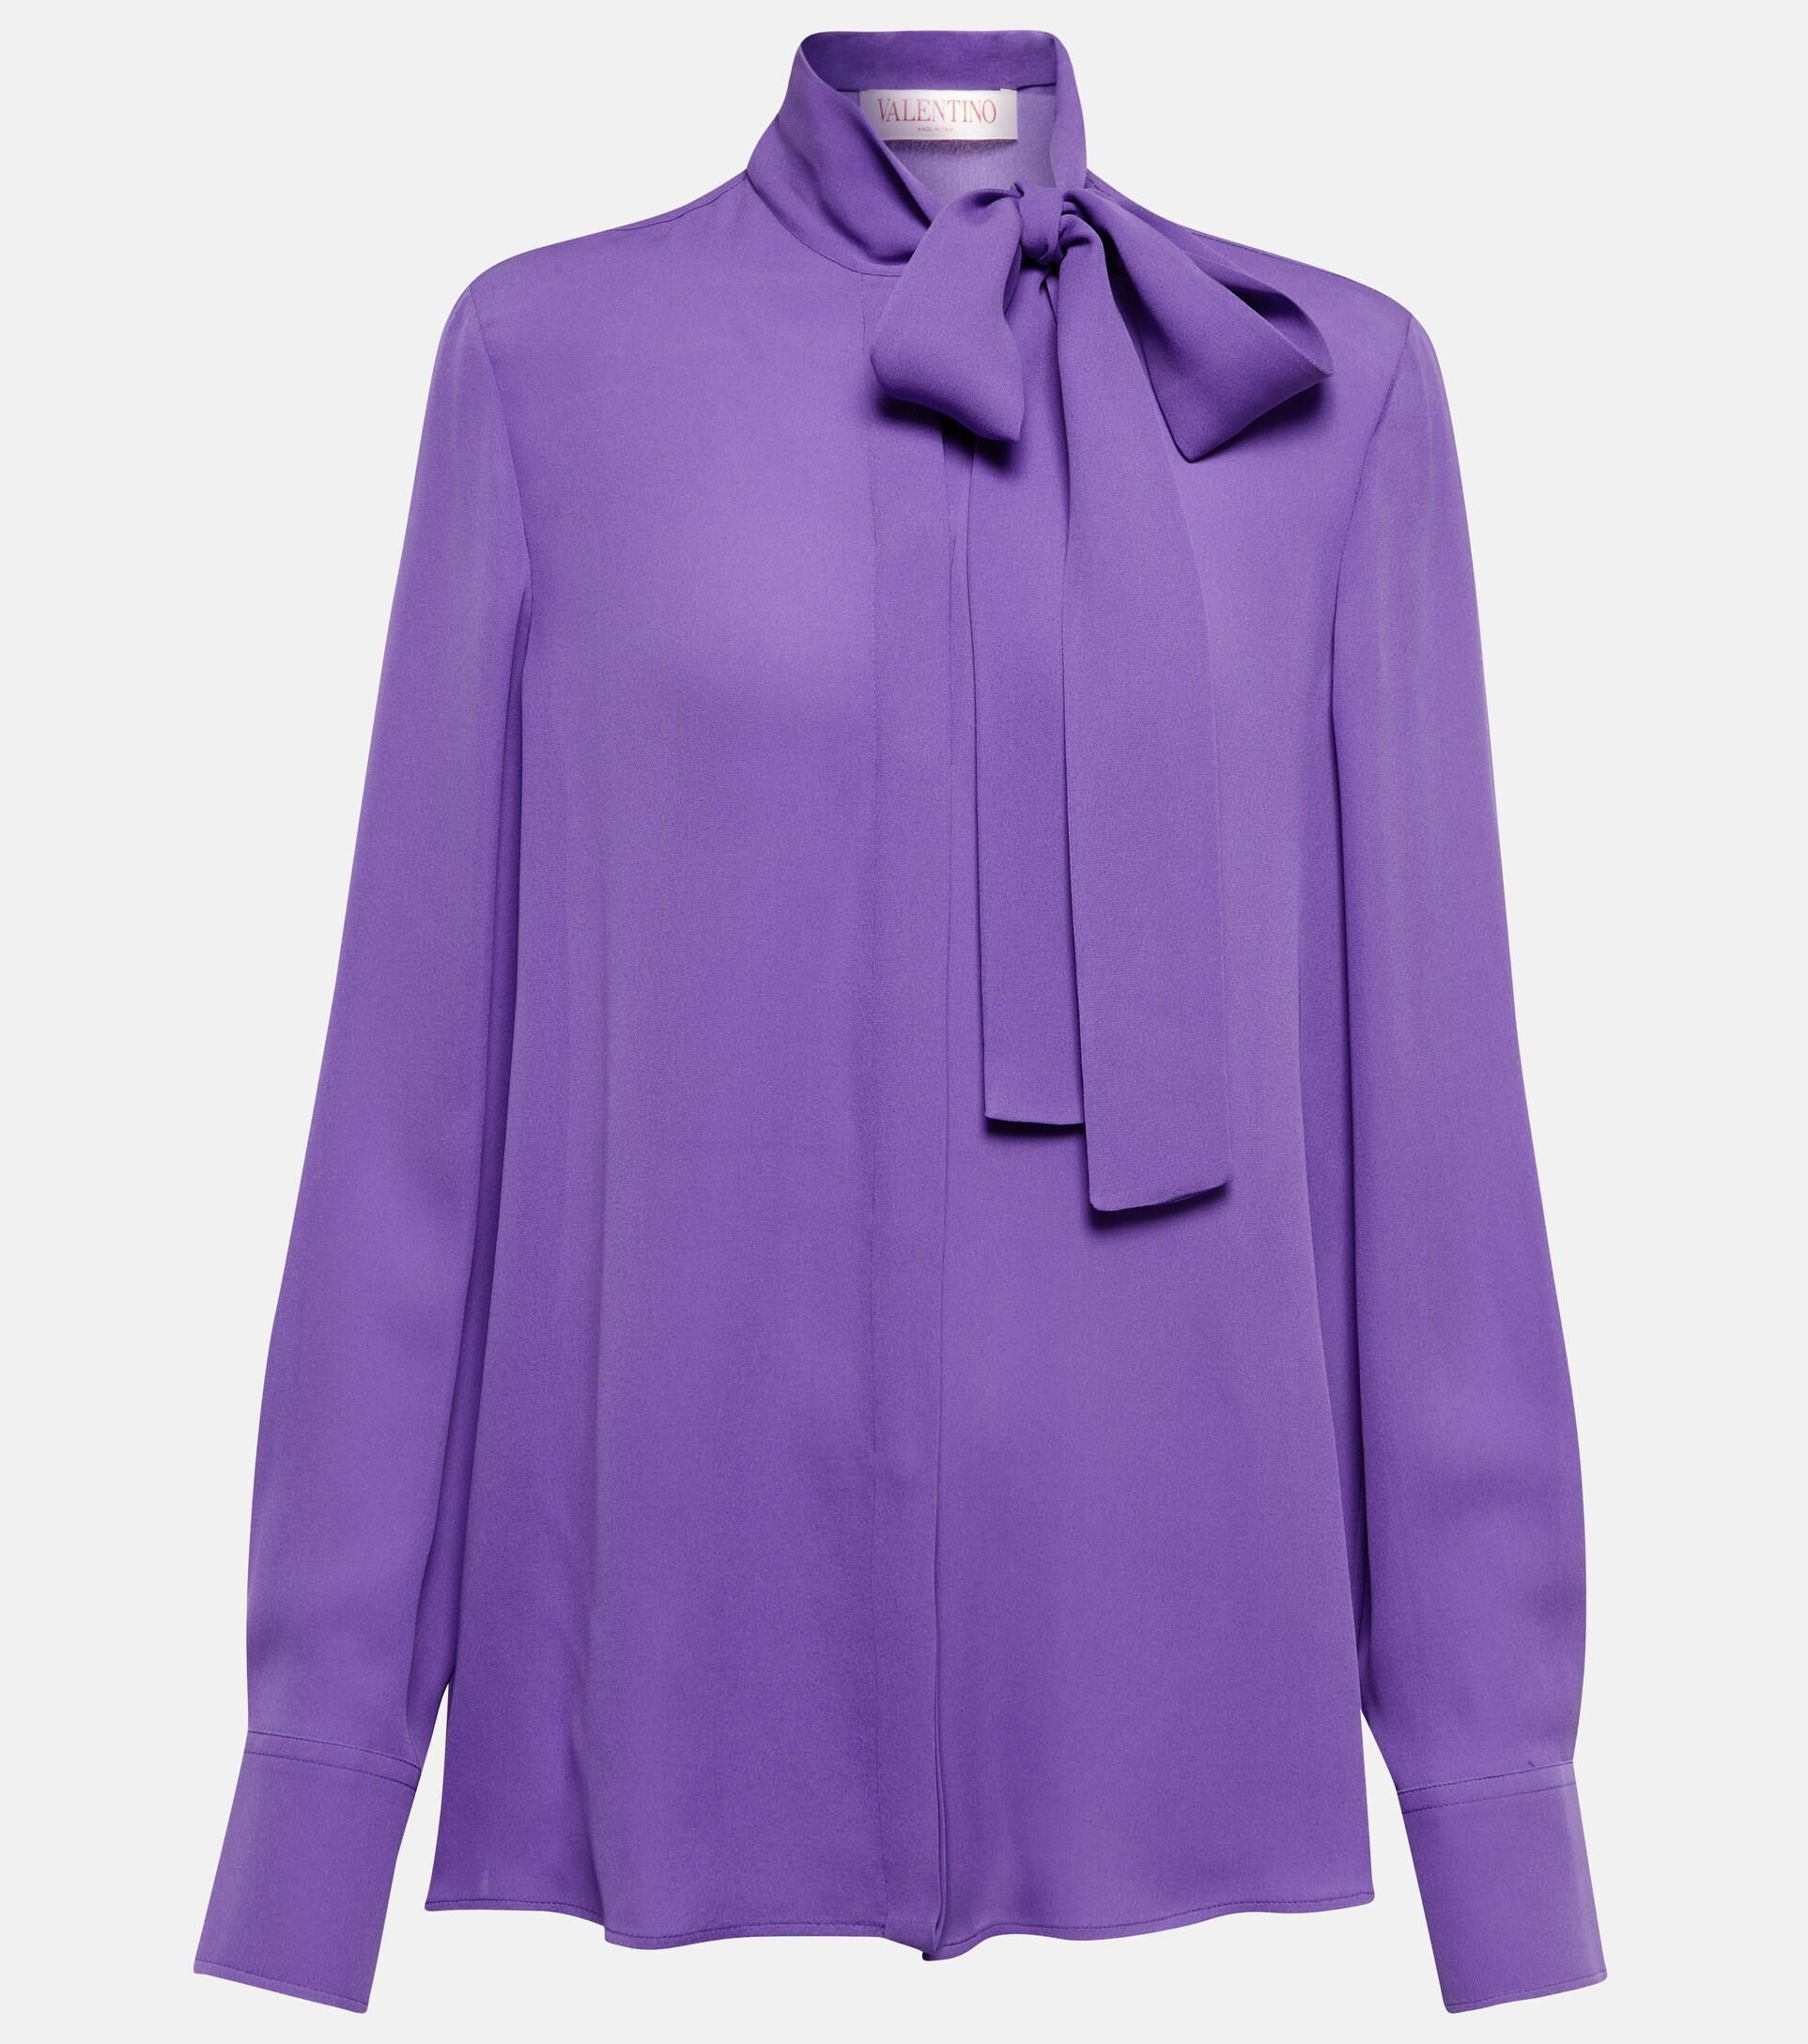 Valentino Tie-neck Silk Georgette Blouse in Purple | Lyst